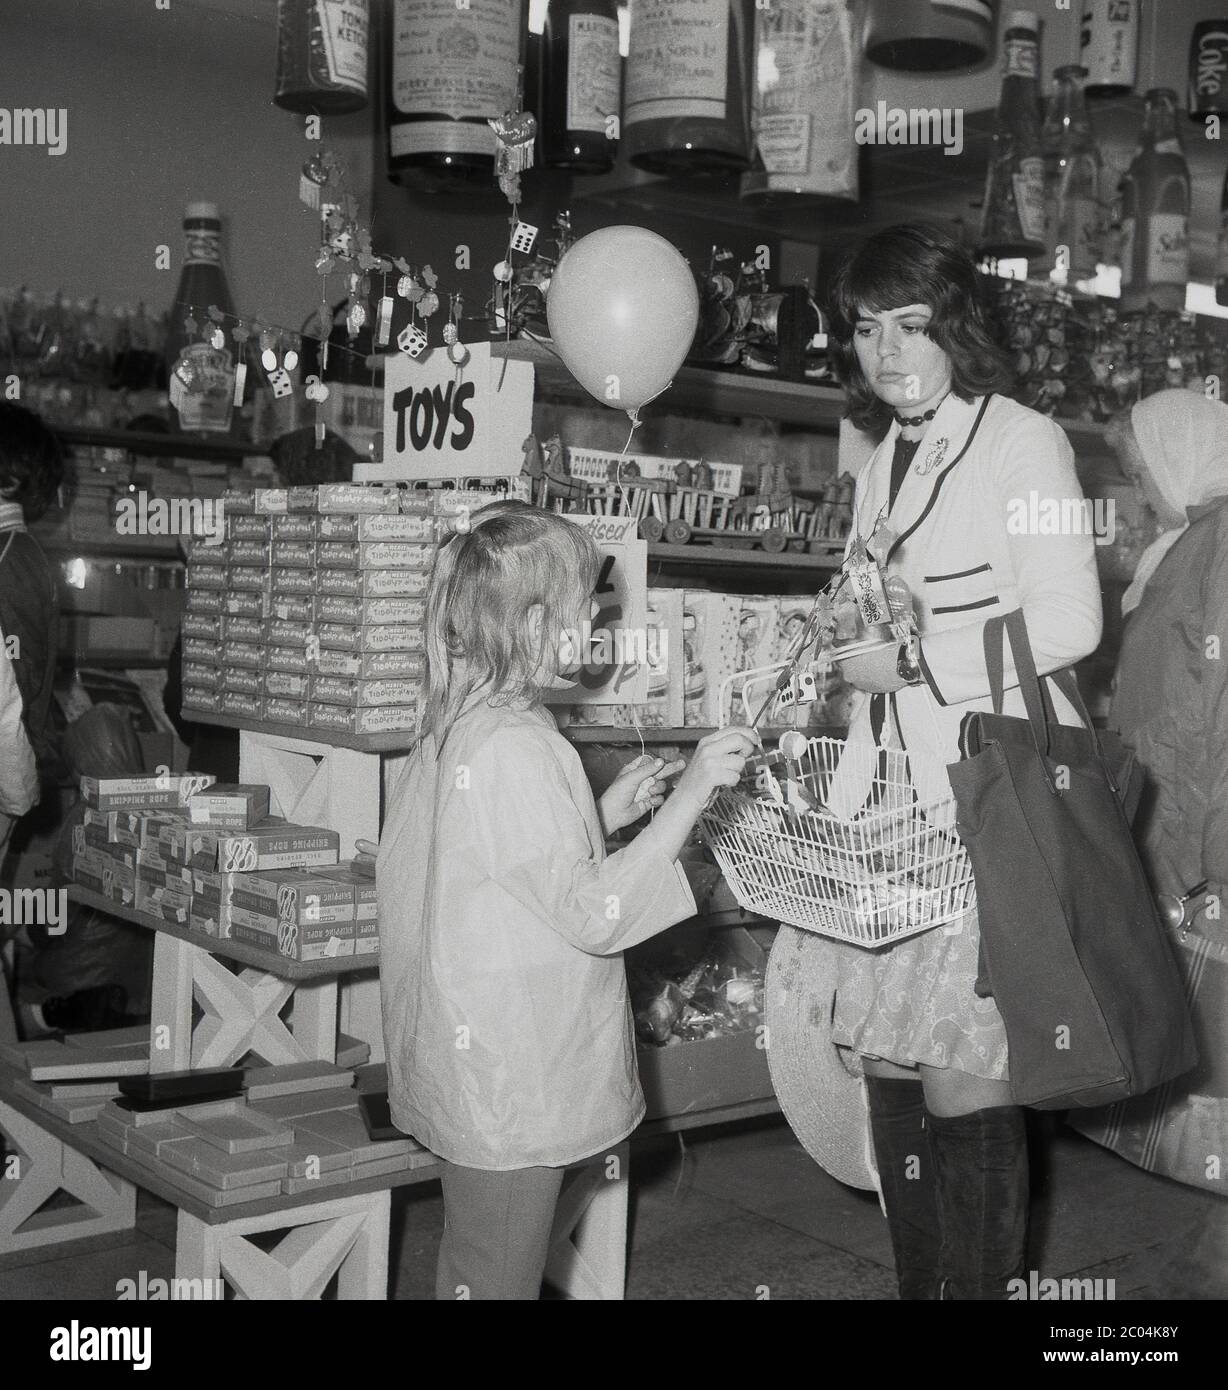 Années 1970, historique, une jeune mère avec un sac en toile et portant un panier de shopping en fil métallique avec sa fille dans un magasin de vente libre-service de l'époque vendant des jouets bon marché, des nicknacks et des produits de fantaisie, sud de Londres, Angleterre, Royaume-Uni. Banque D'Images